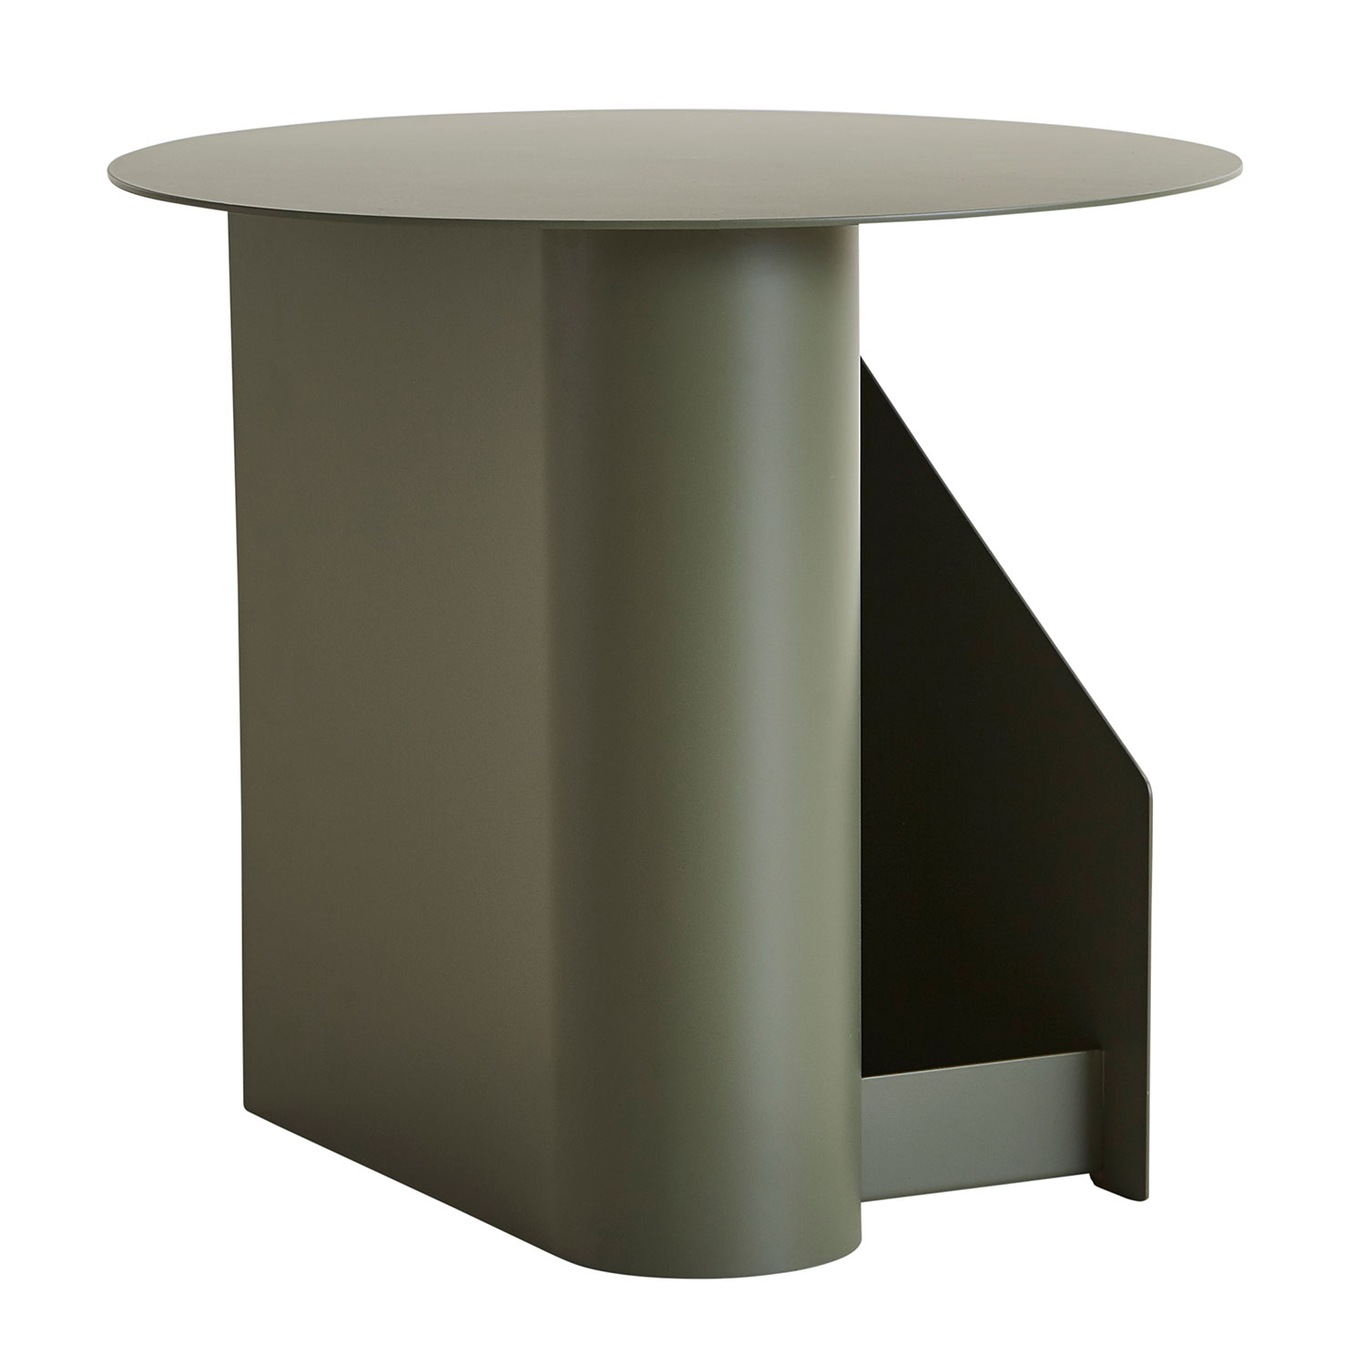 Sentrum Side Table, Dusty Green